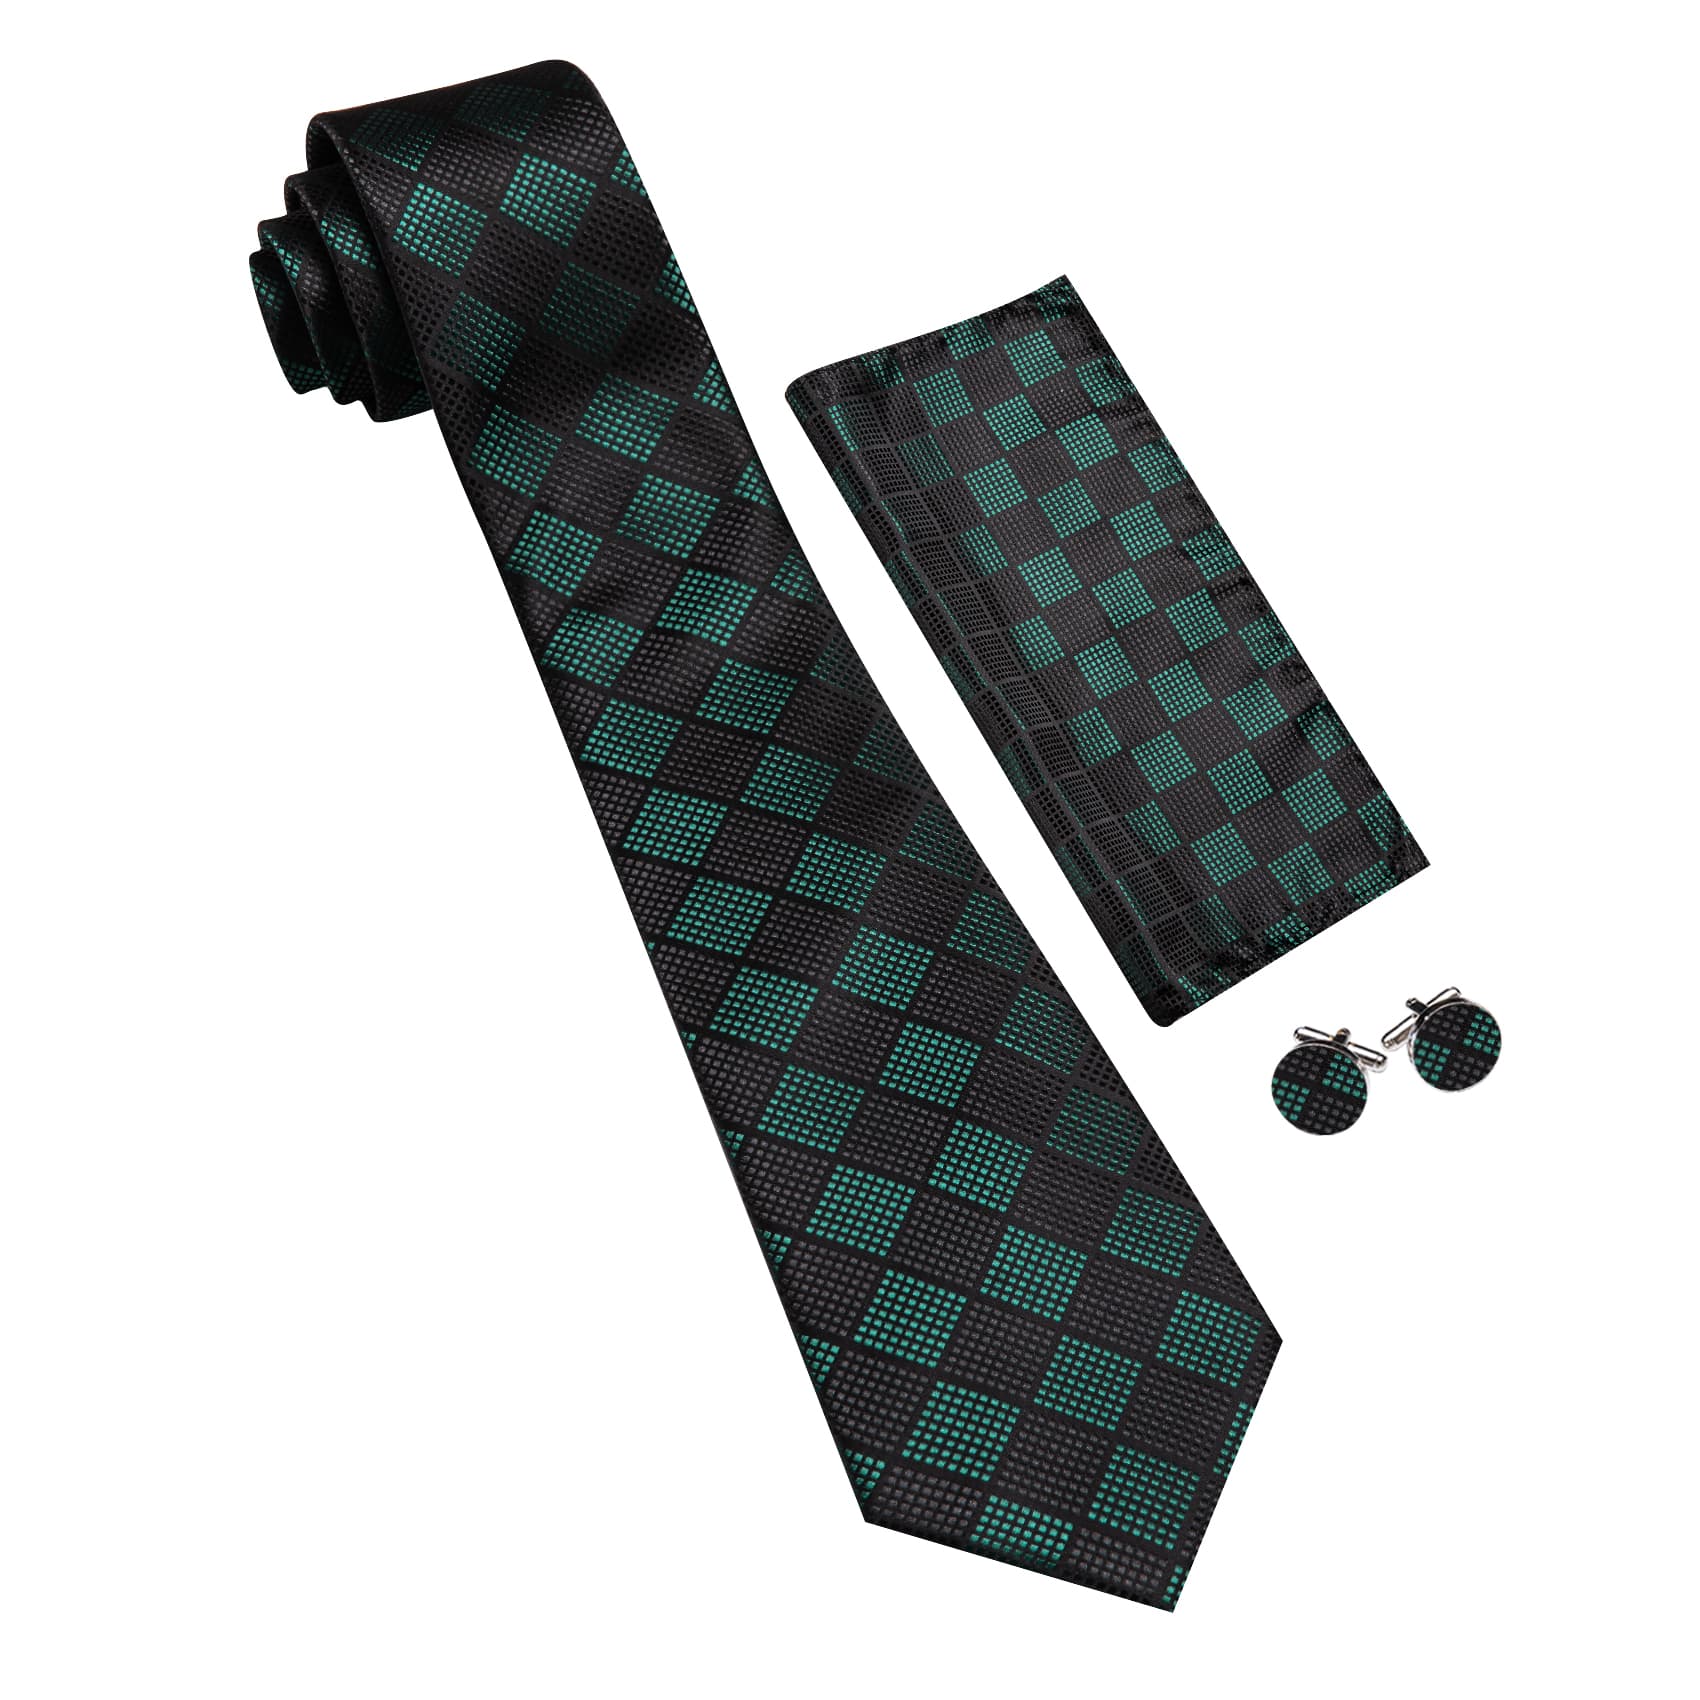  Plaid Tie Black Green Checkered Necktie and Cufflink Set